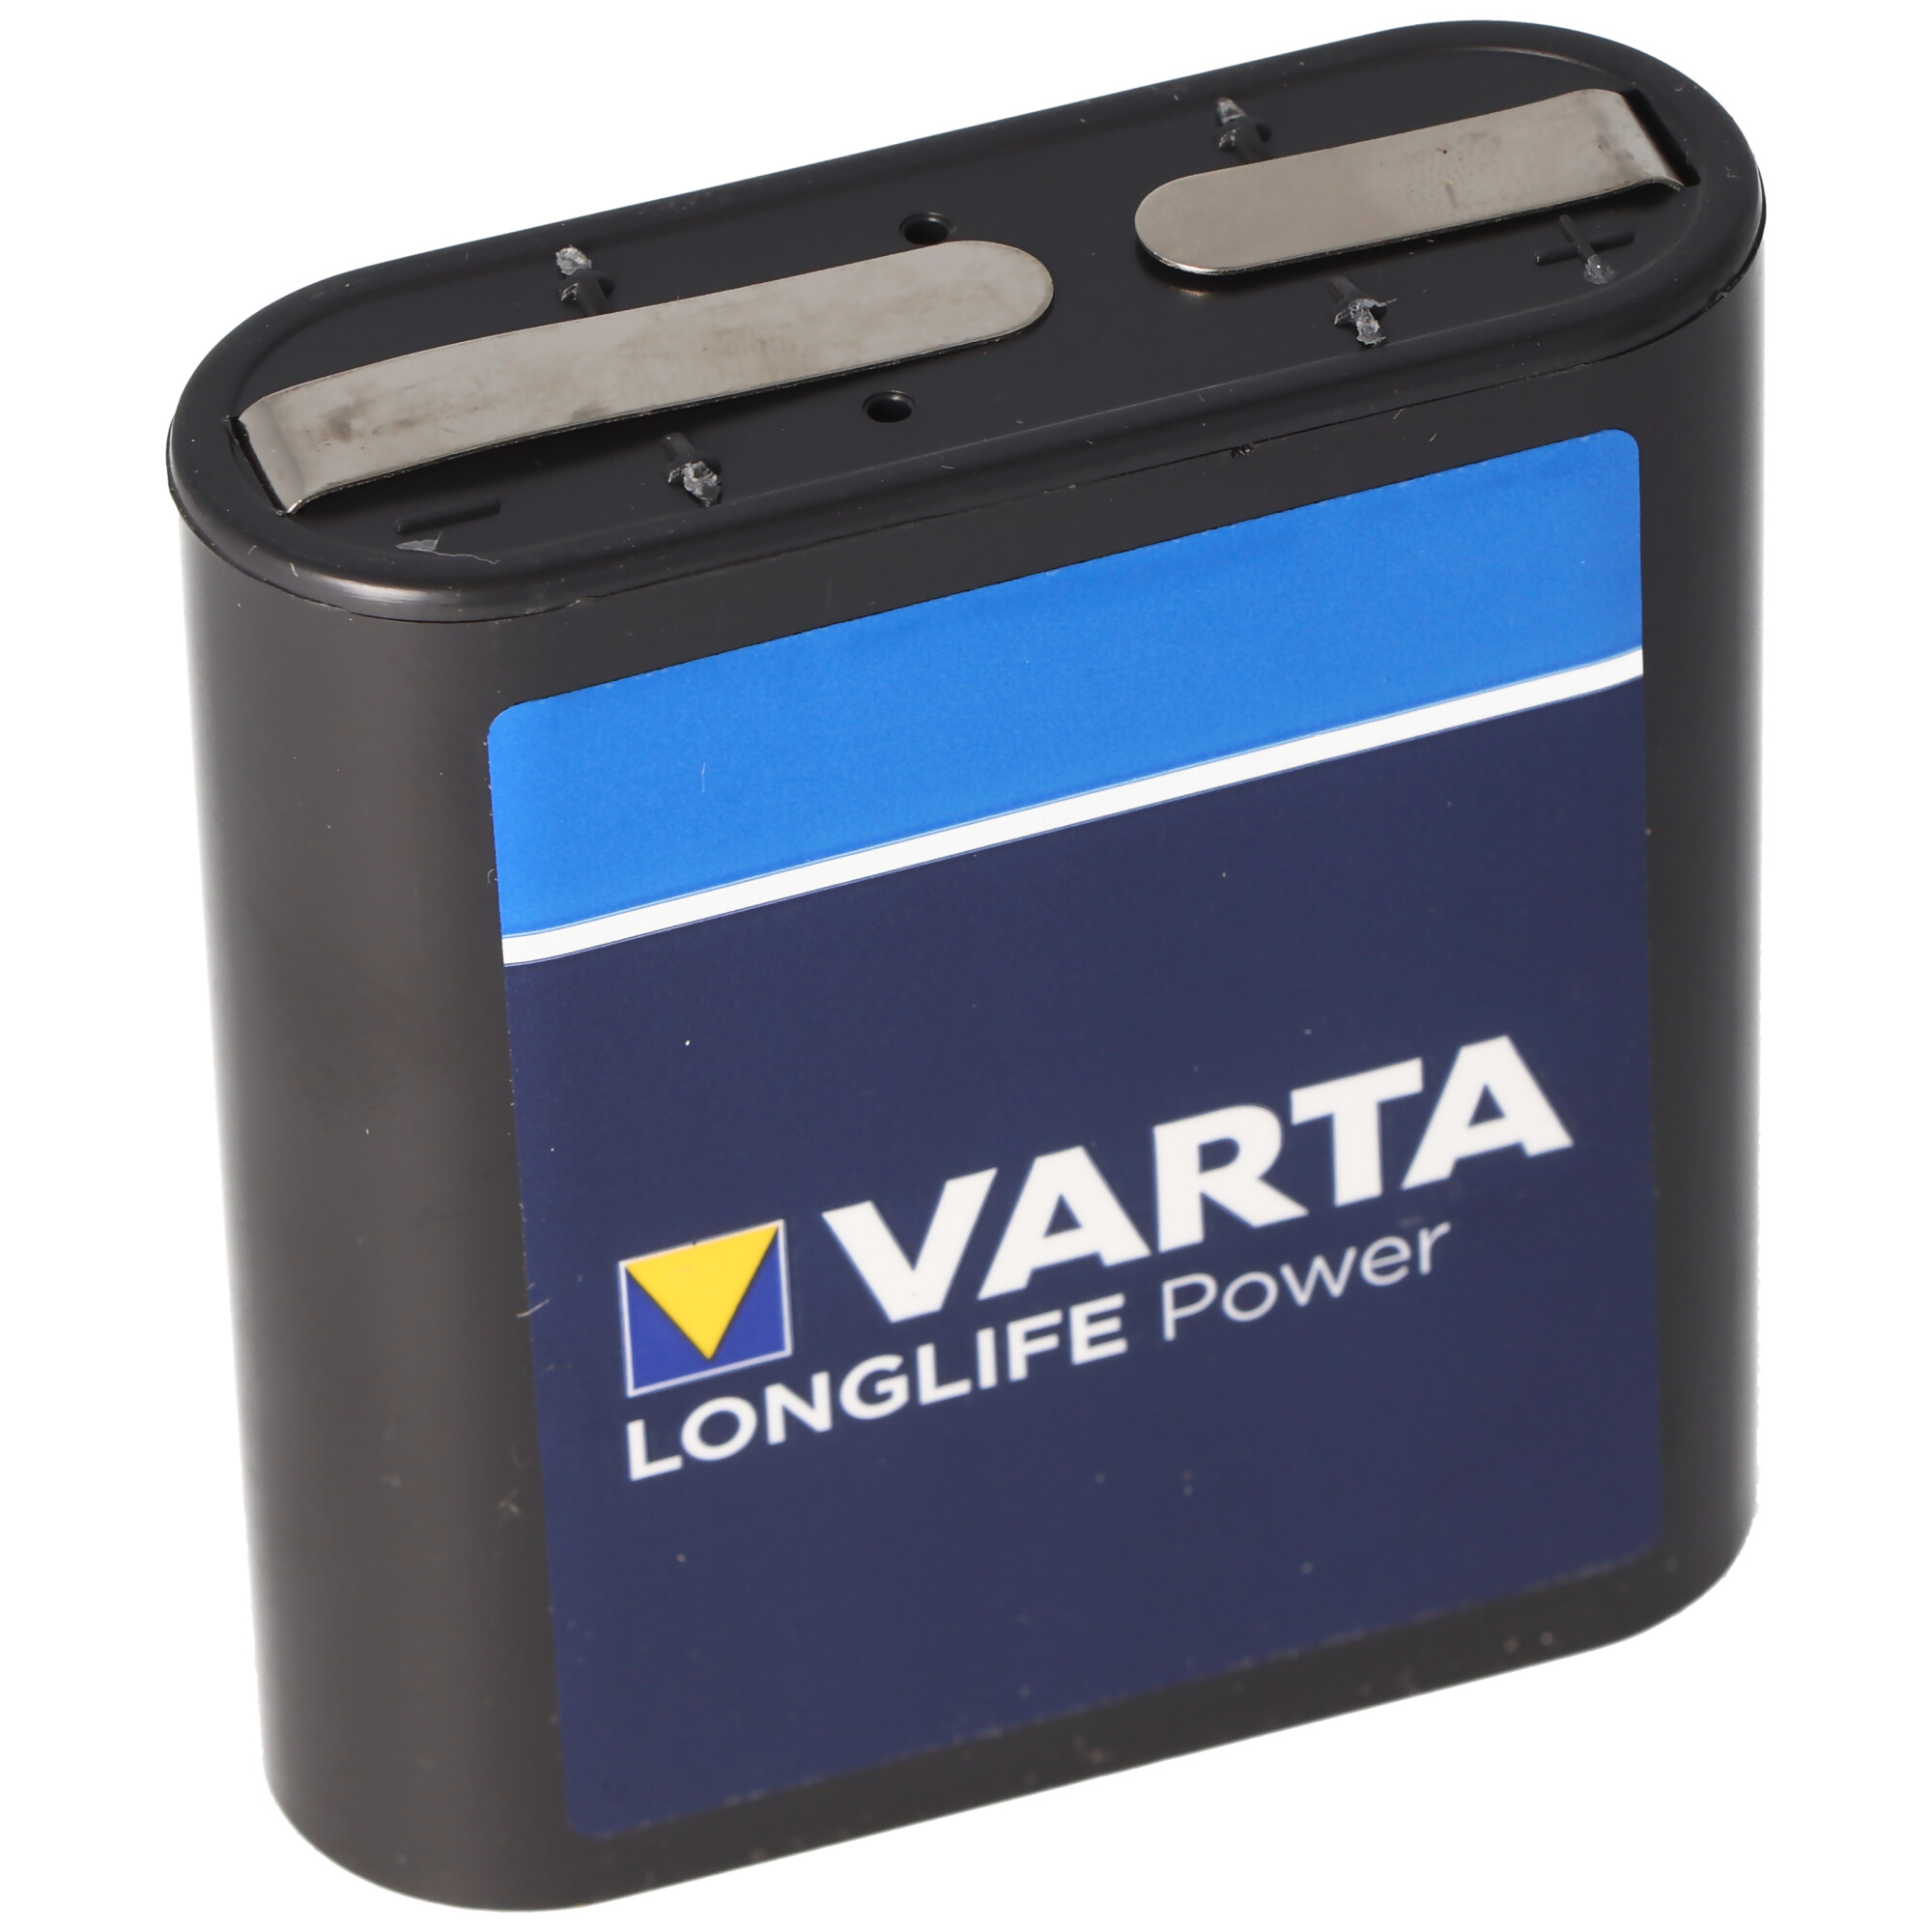 Varta Longlife Power ehem. High Energy 4912 Flachbatterie 4,5V, MN1203, 3LR12, 3LR12P 10er Box